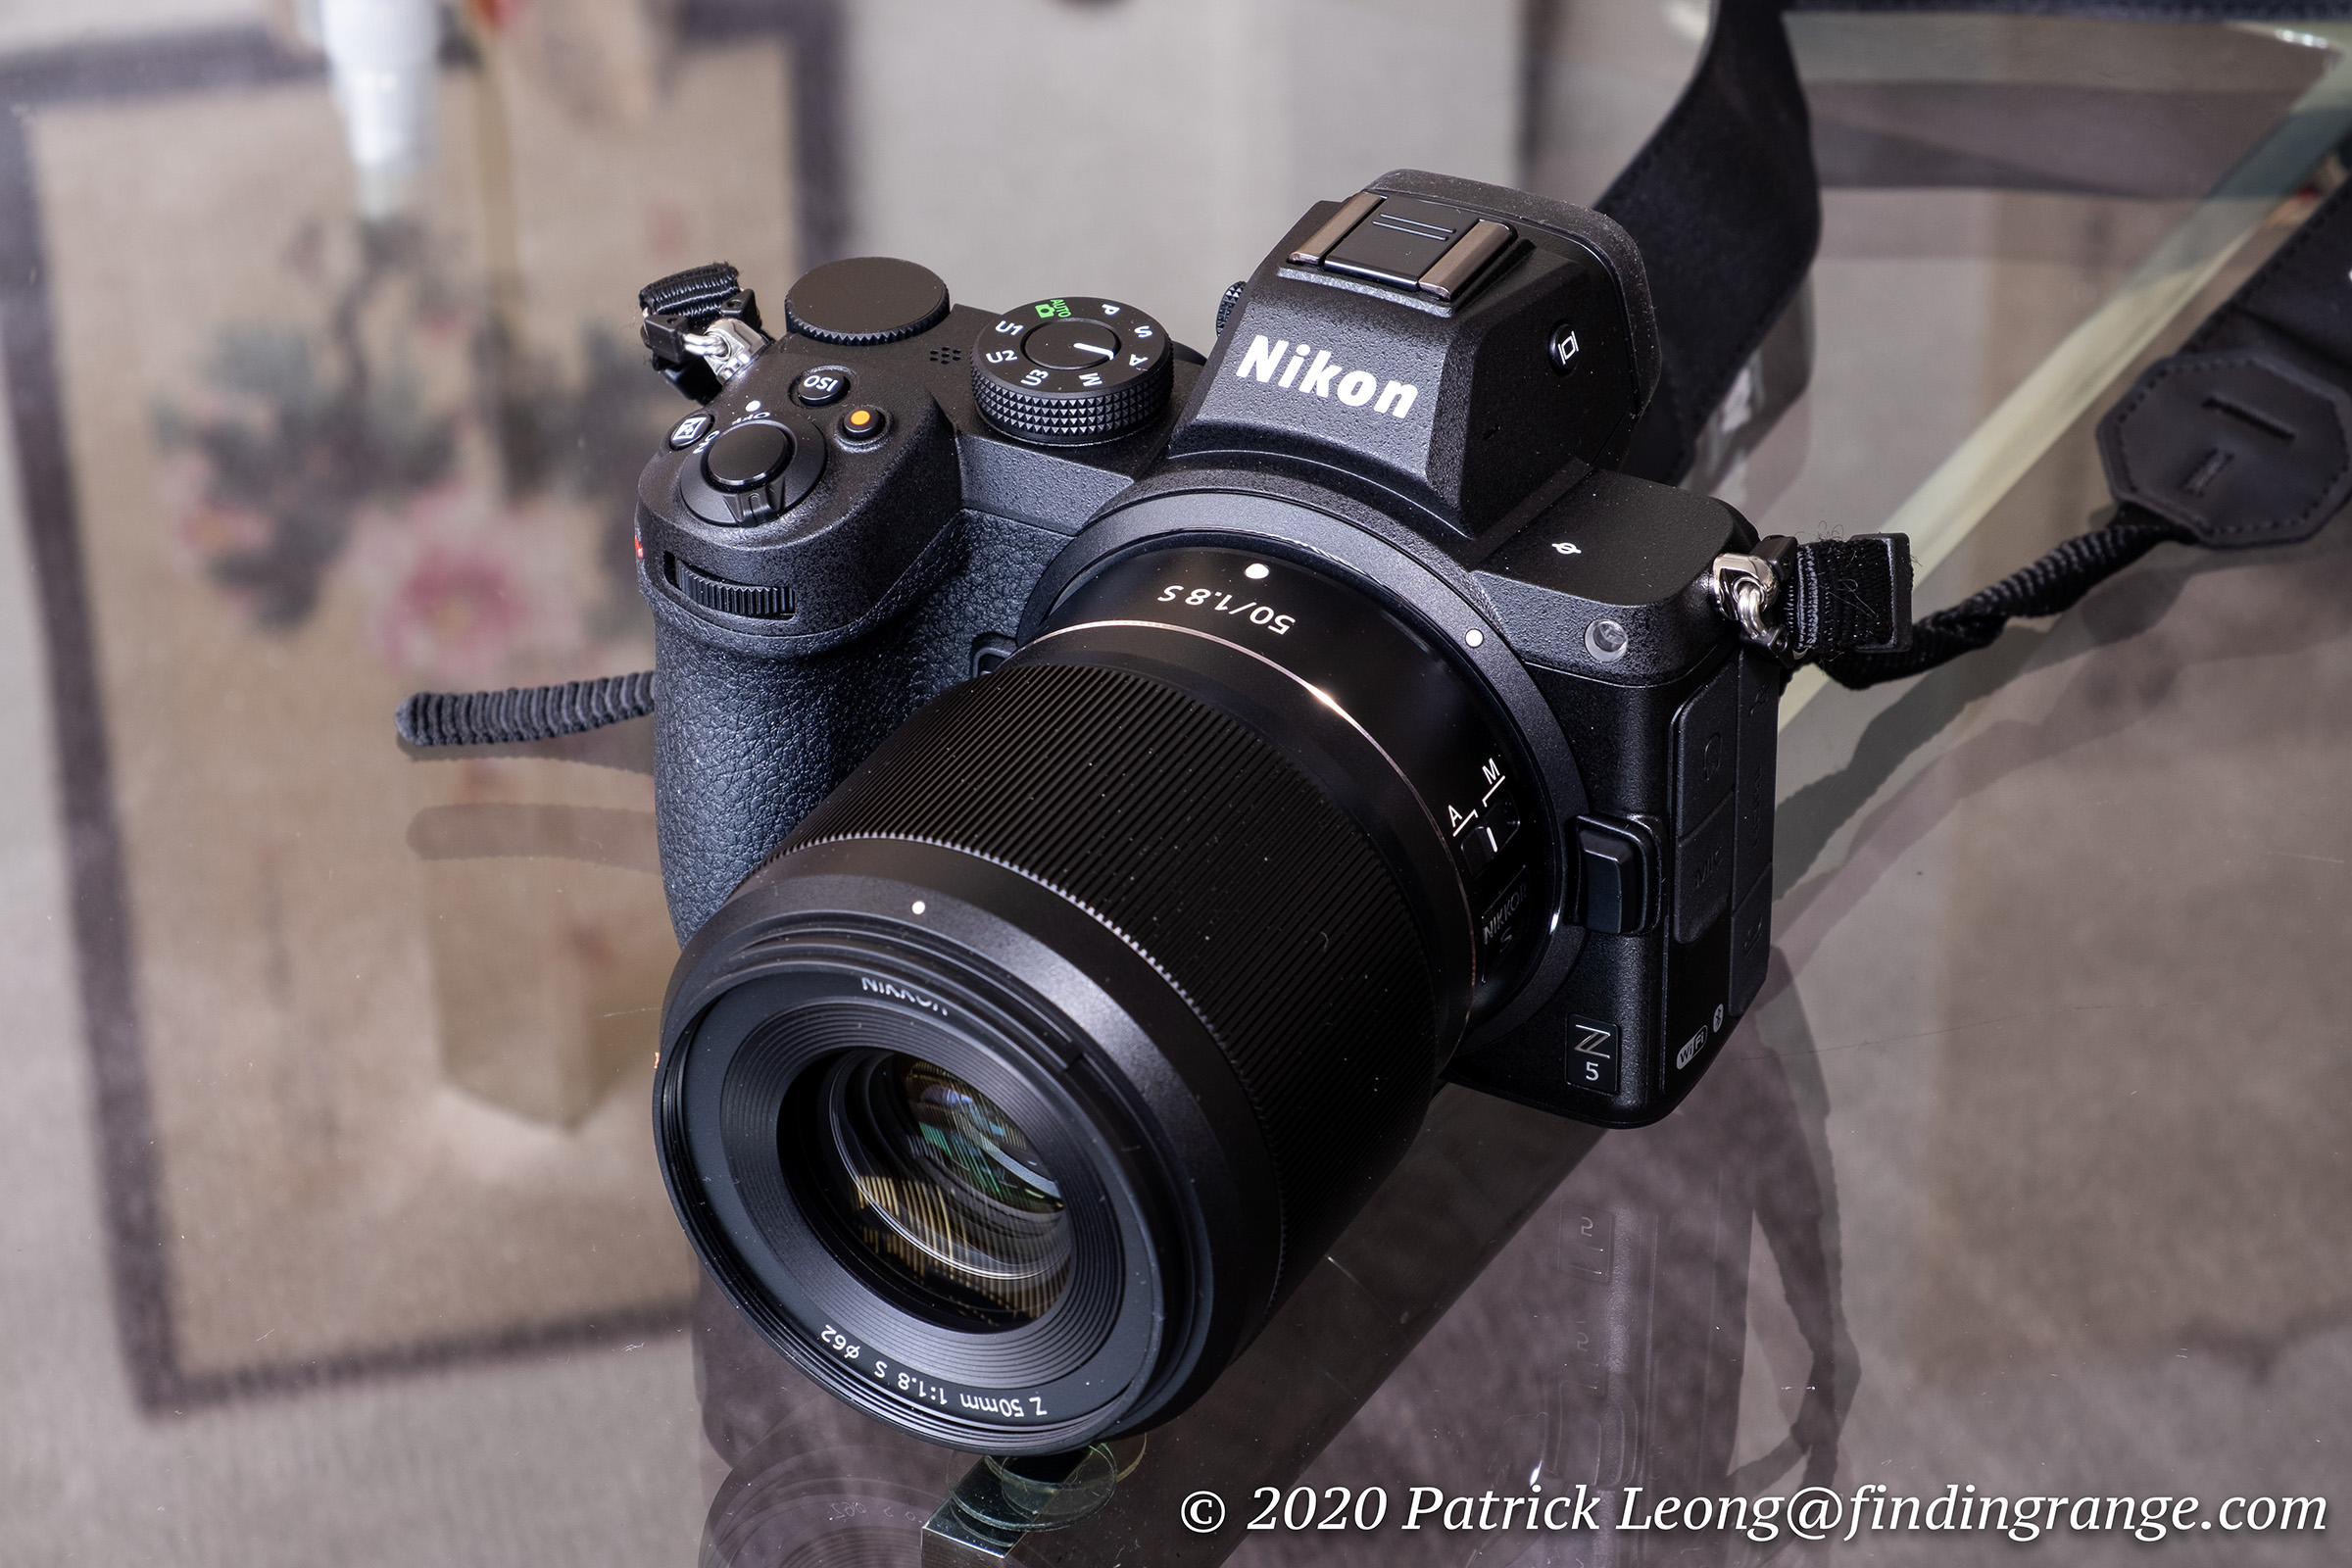 Nikon Z5 Mirrorless Digital Camera (Z5 Camera Body) B&H Photo Video